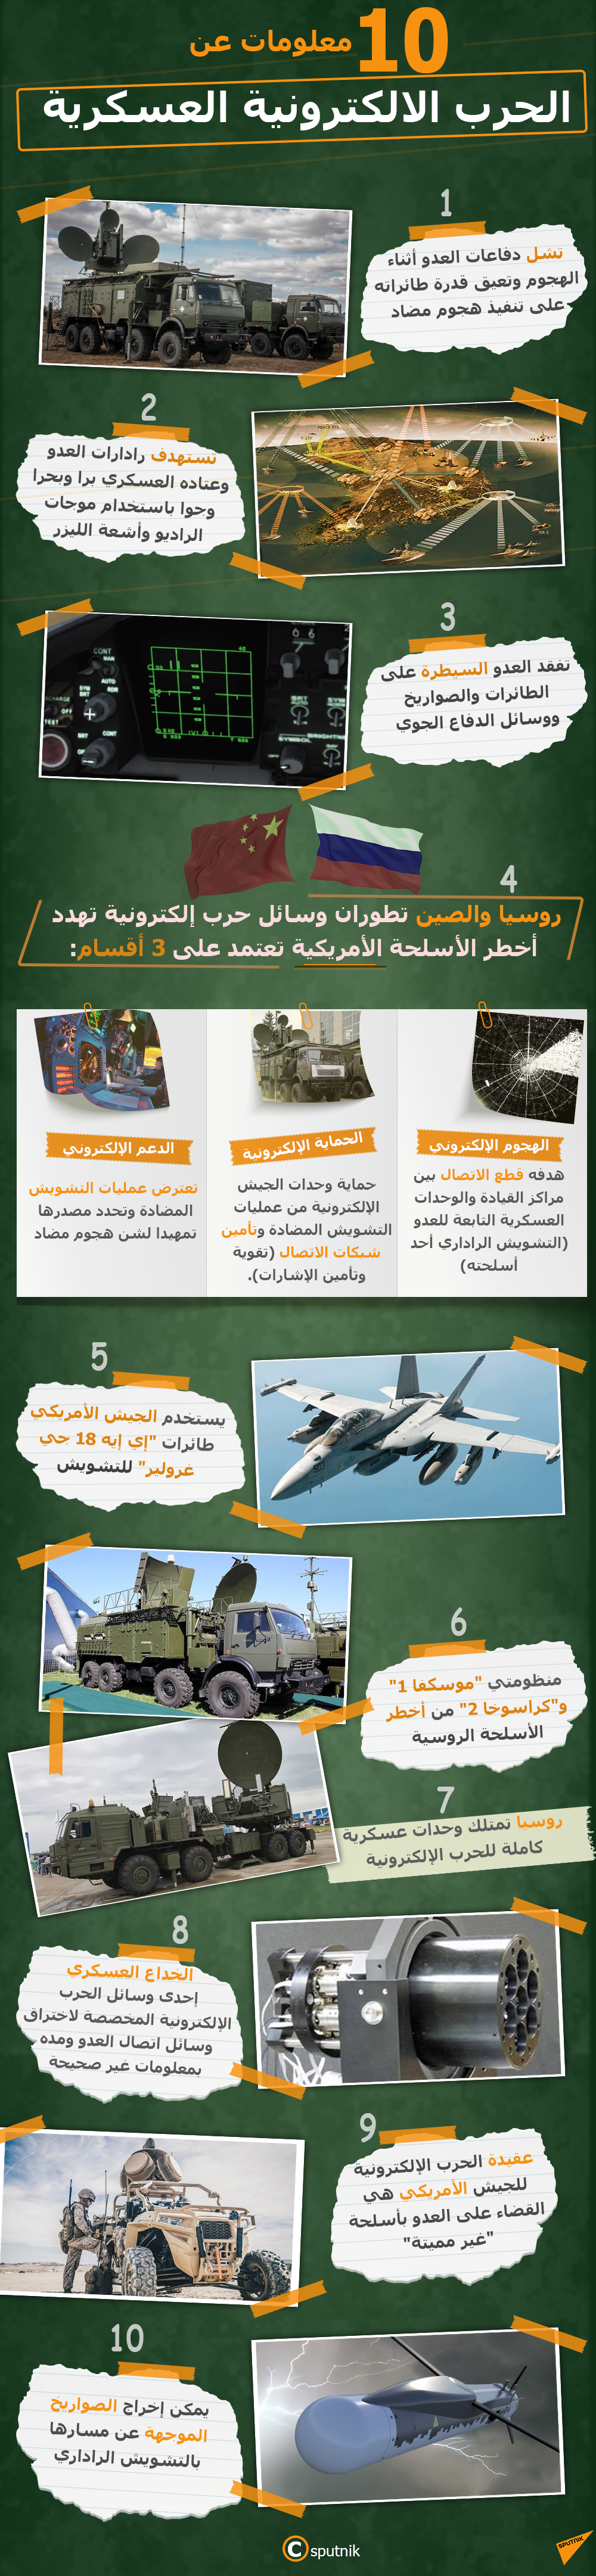 10 معلومات عن الحرب الالكترونية العسكرية - سبوتنيك عربي